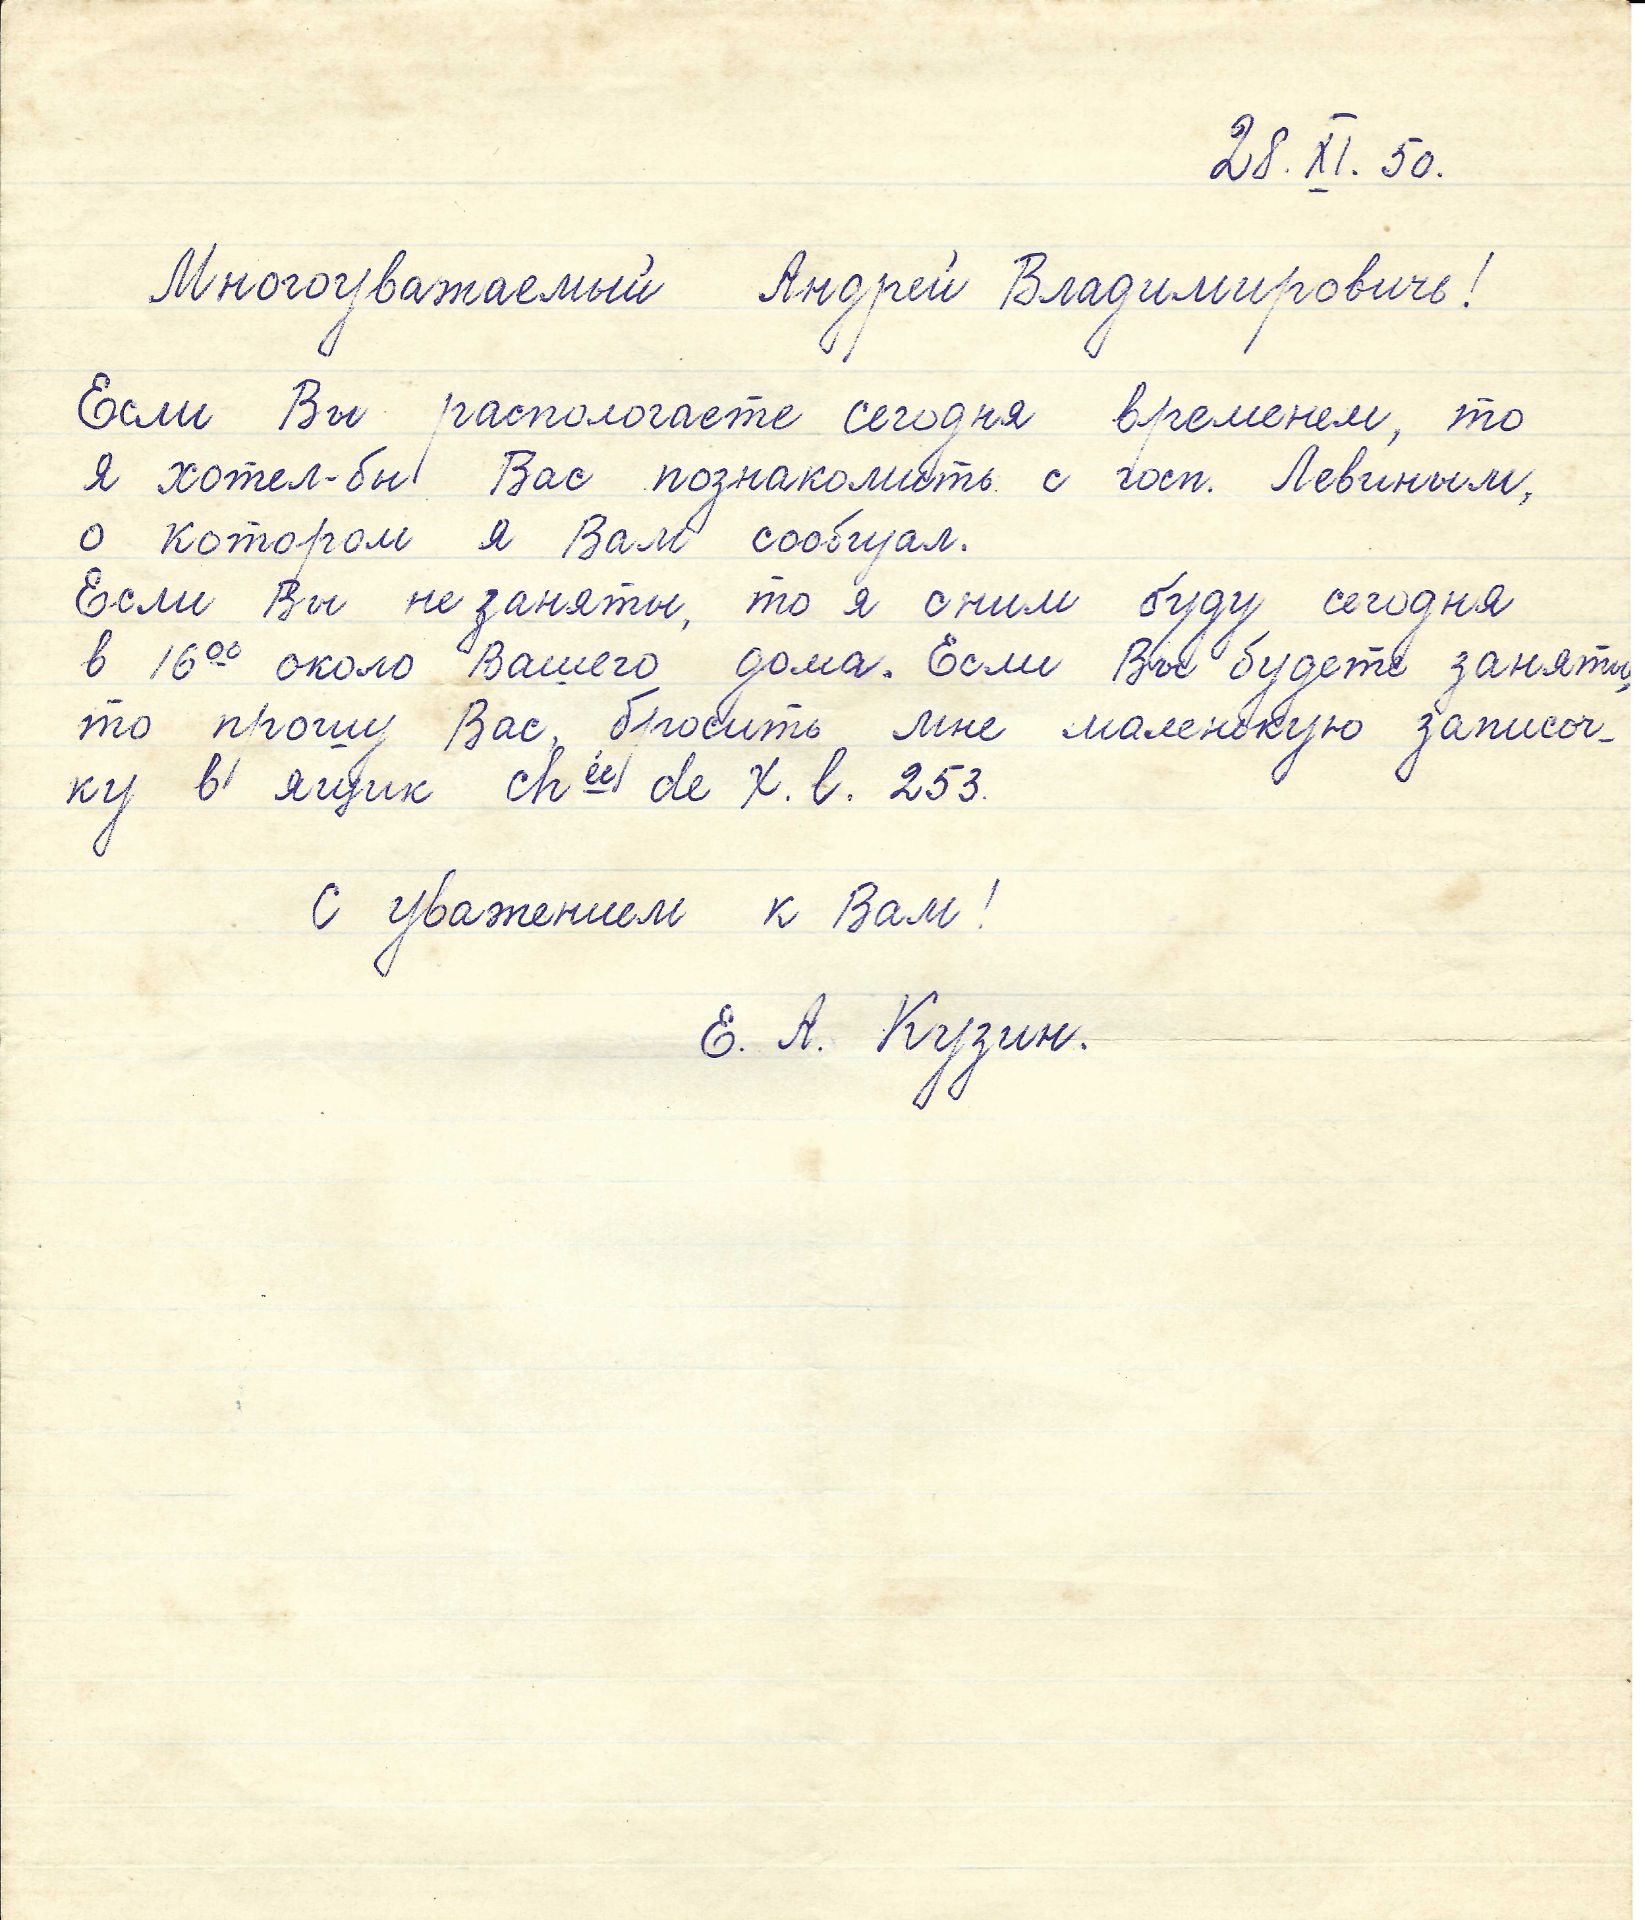 ARCHIVES d’Andreï BALASHOV (1889-1969) • Correspondances avec A.Efremov (1878-1964) en France, V. - Image 38 of 39